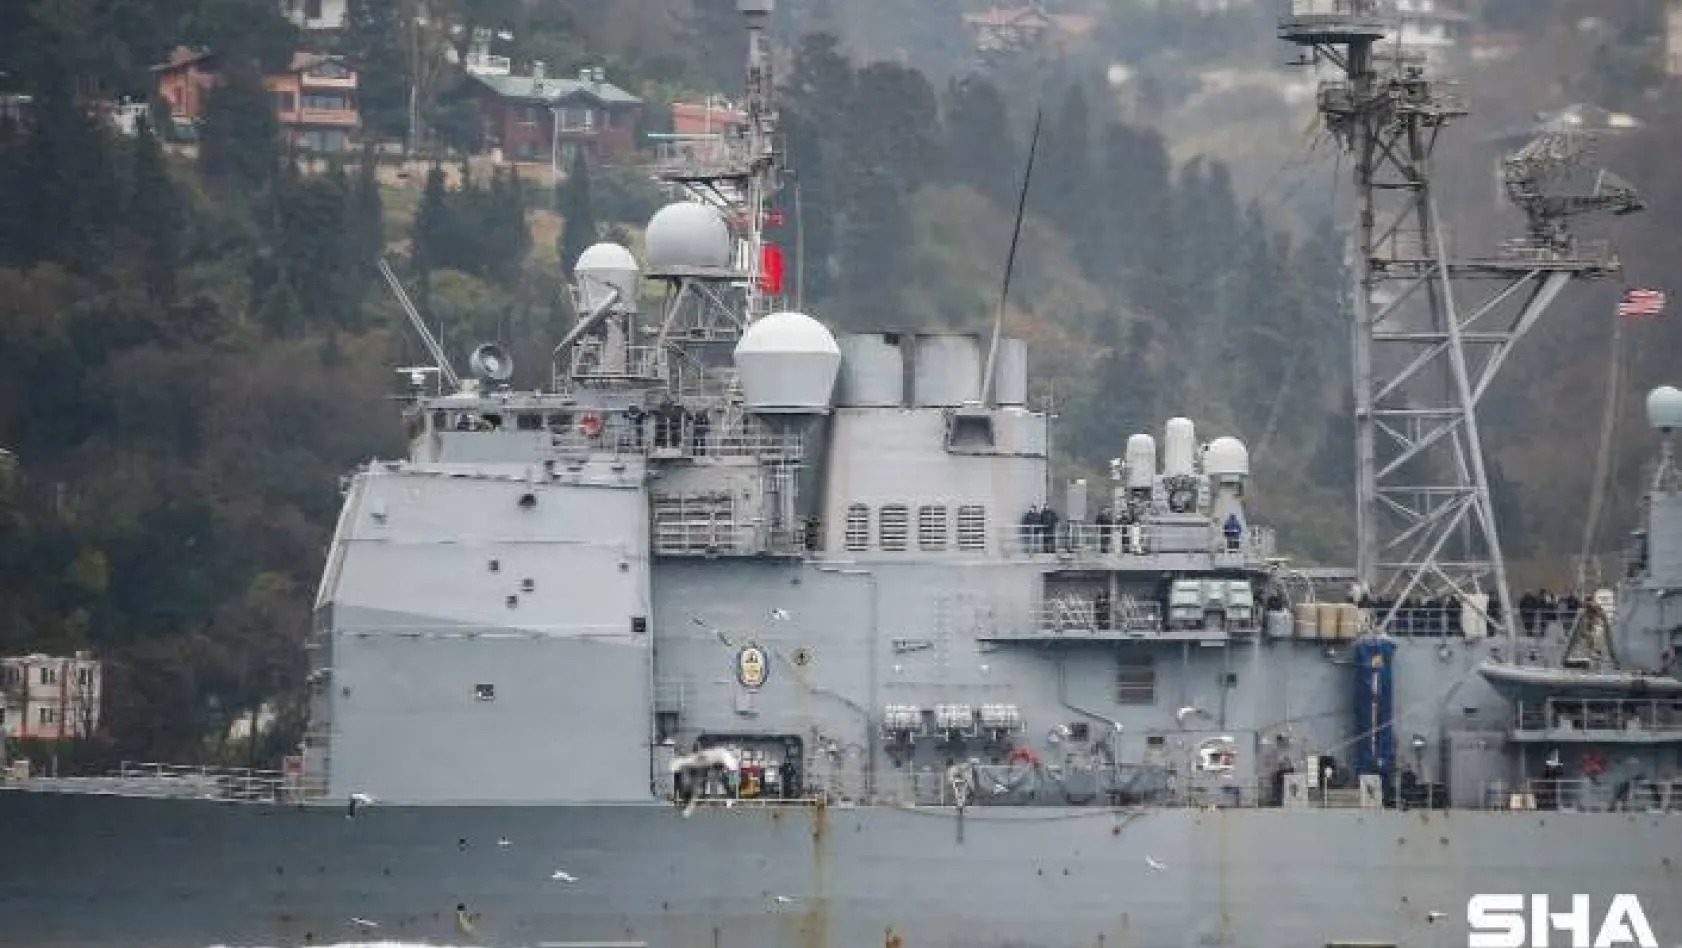 ABD savaş gemisi USS Monterey'in İstanbul Boğazı geçişinde dikkat çeken detay